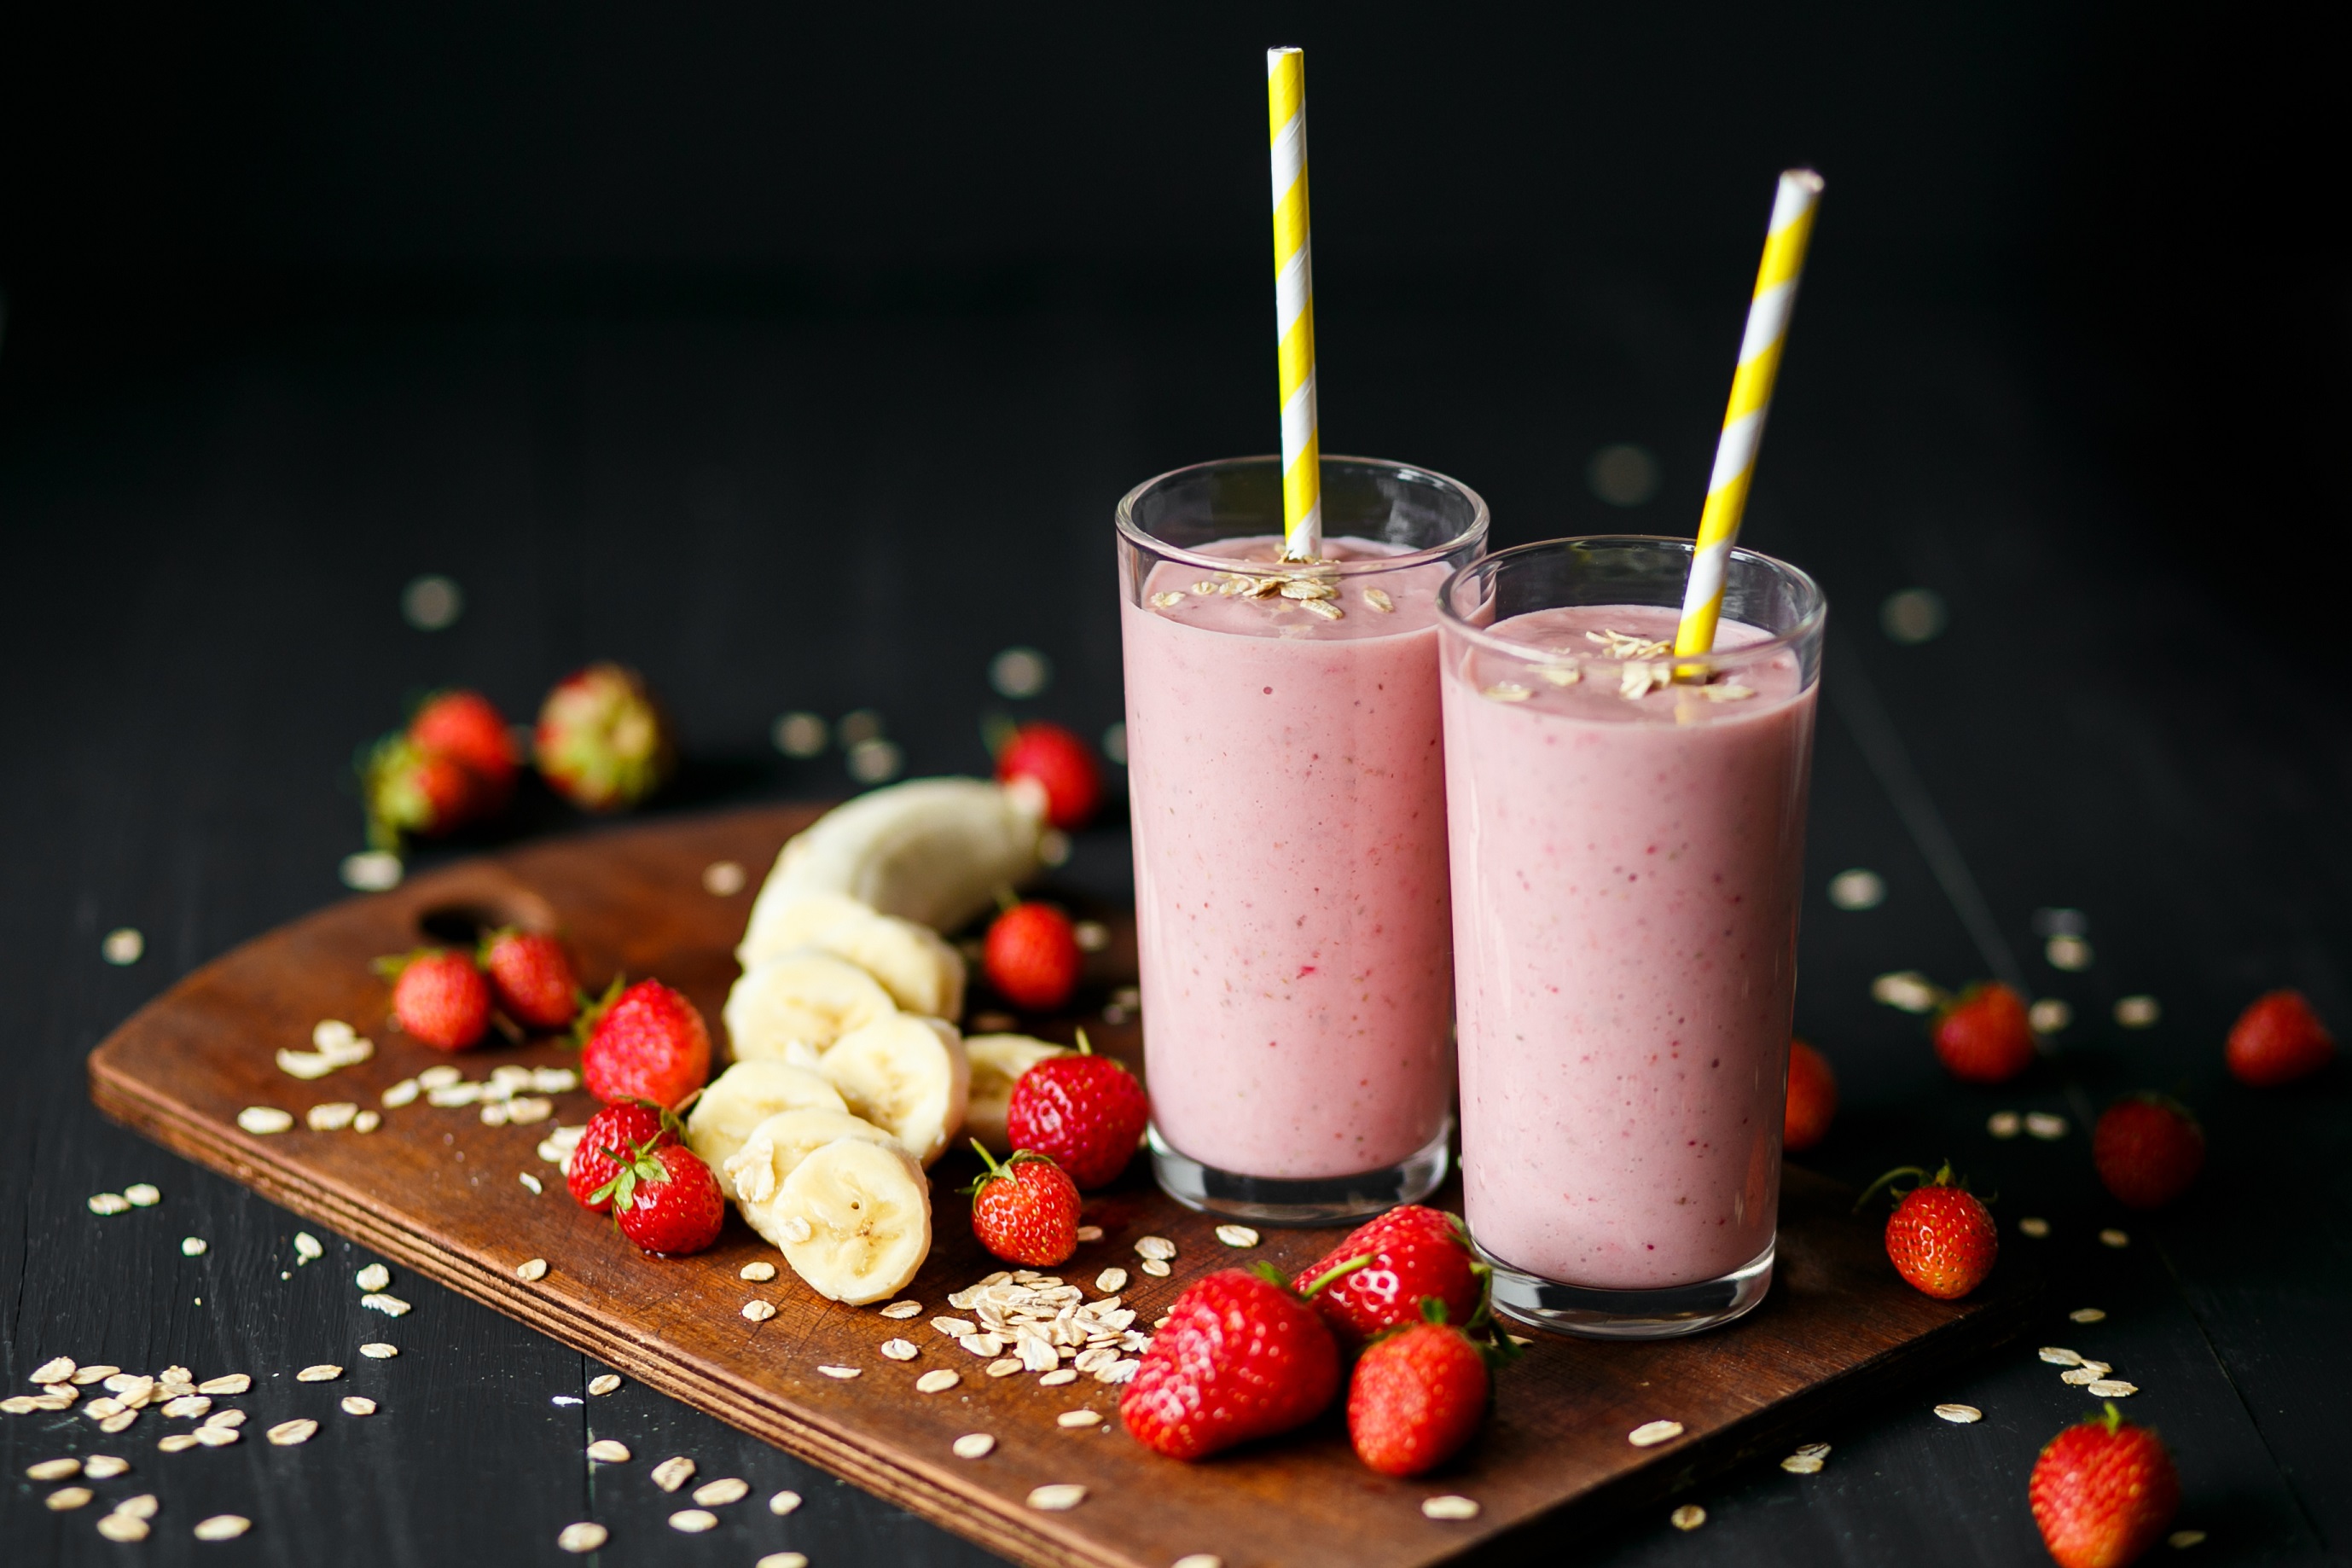 Prática para o café da manhã, vitamina de morango com aveia ajuda no controle do colesterol e fornece vitaminas para o corpo - Foto: Shutterstock